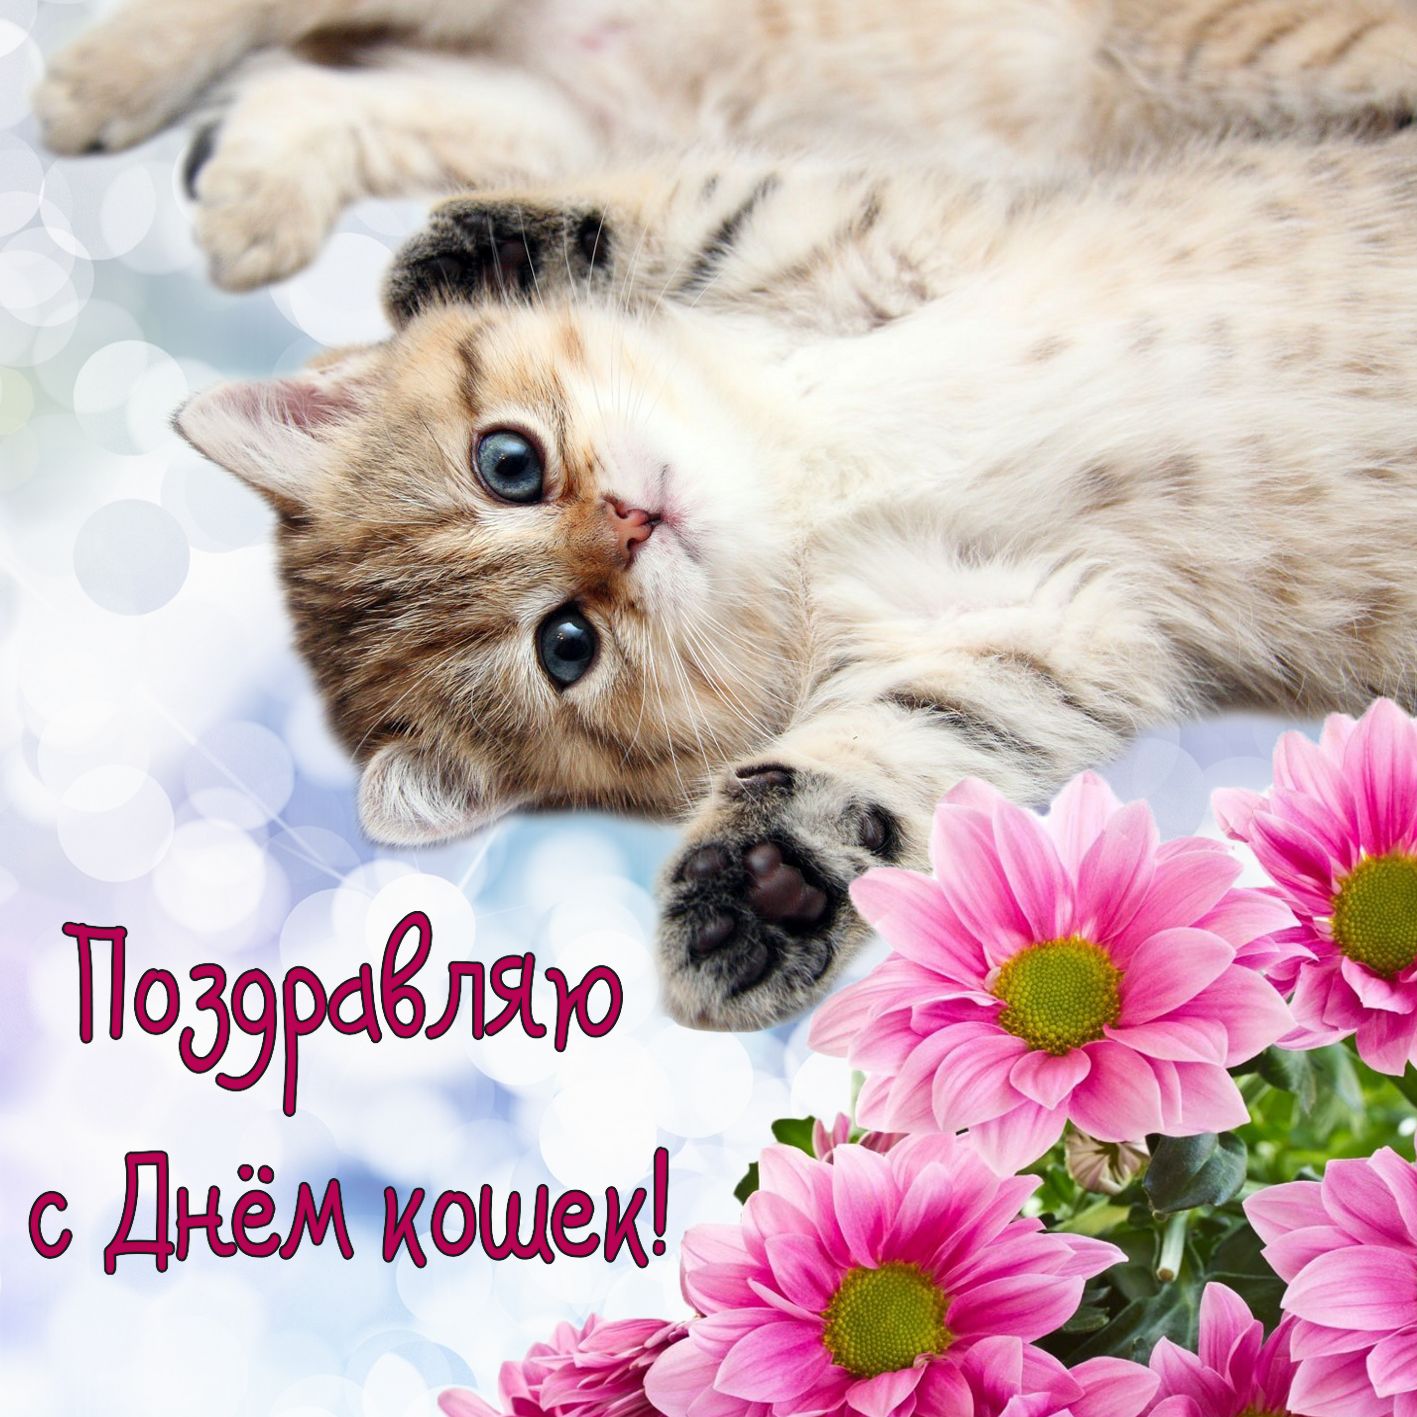 Поздравление кошечки. День кошек. Всемирный день кошек 8 августа. Международный день когнк. День кошек открытки.